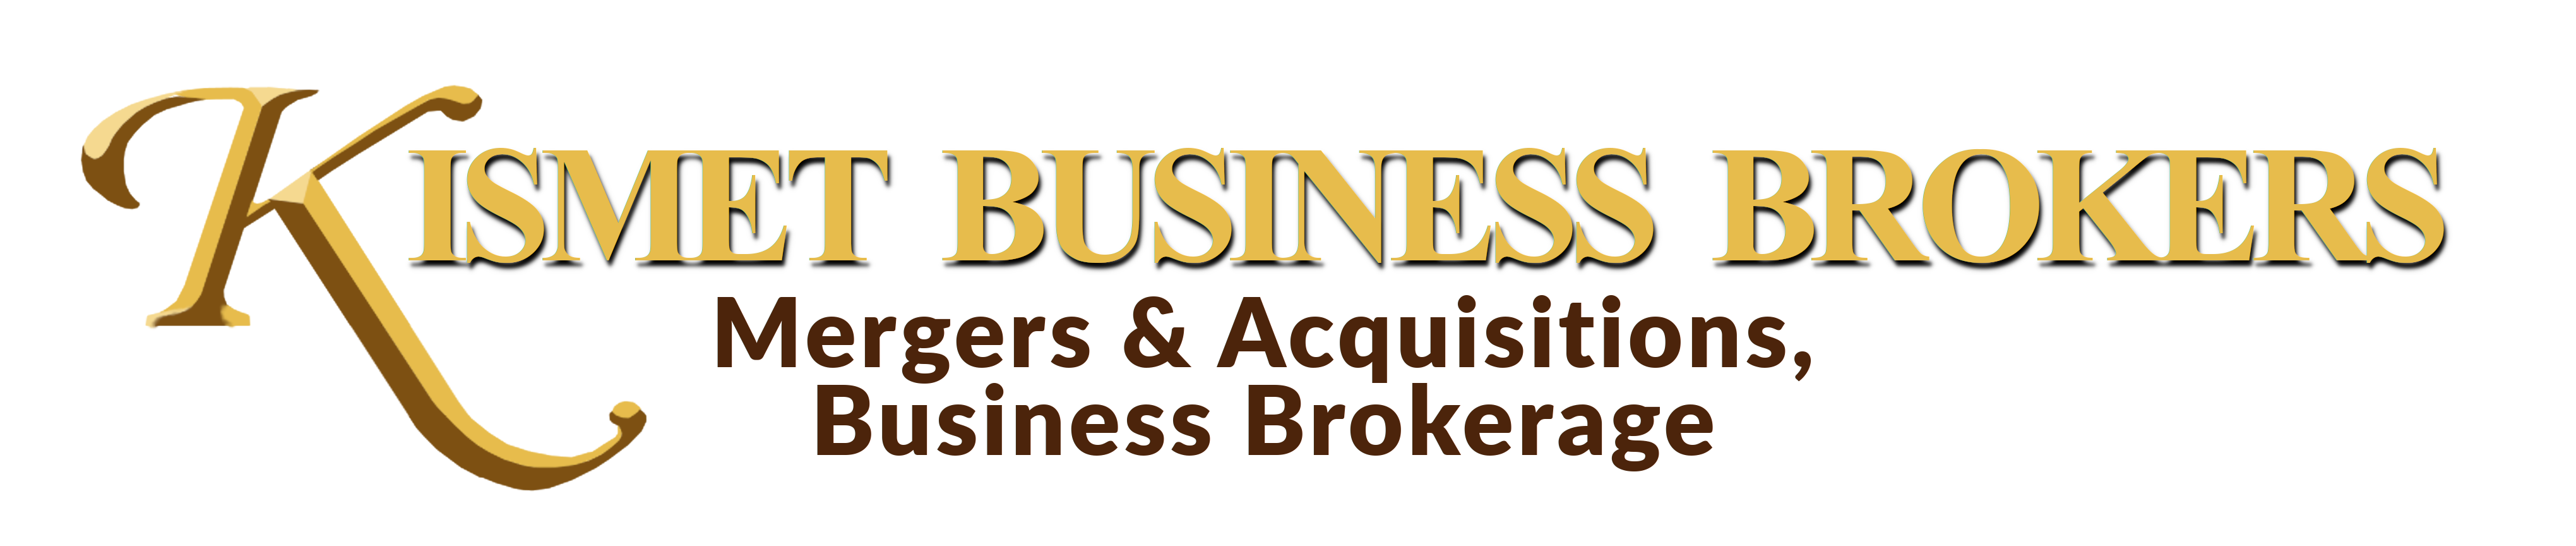 Kismet Business Brokers